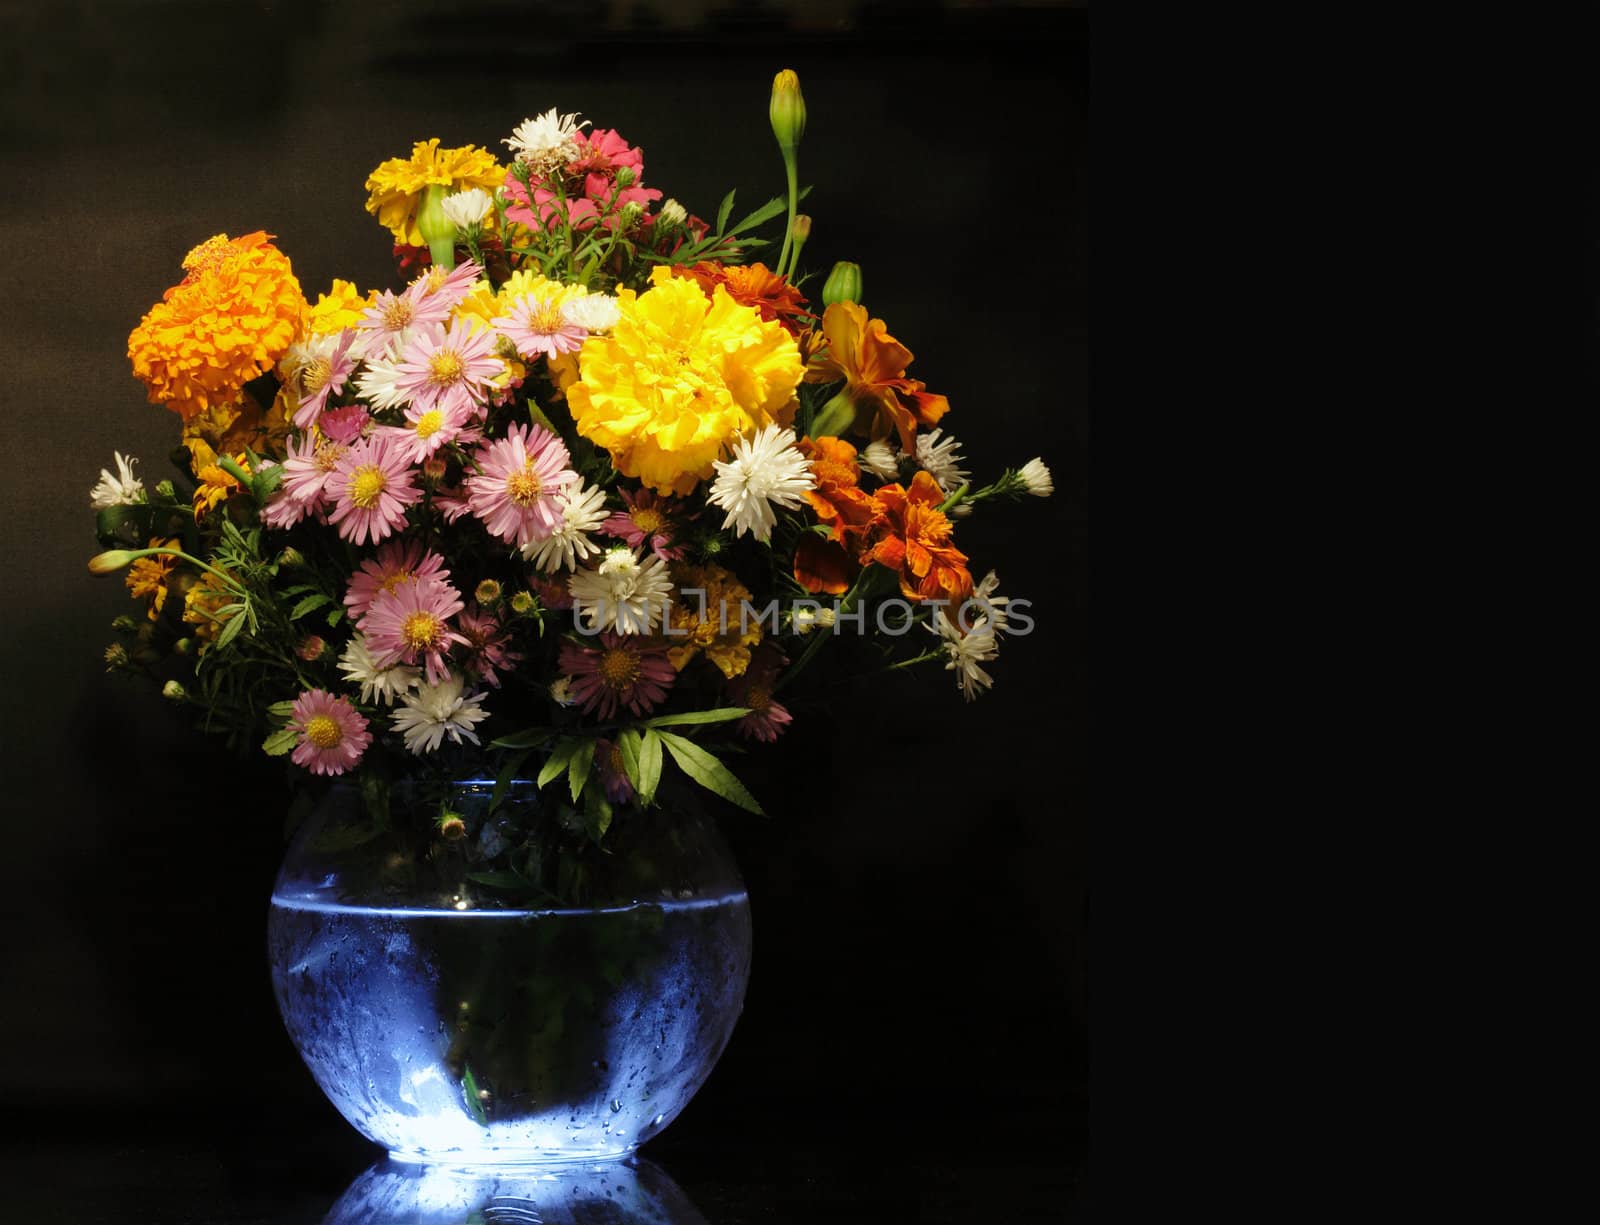 Flower Bouquet On Dark by kvkirillov